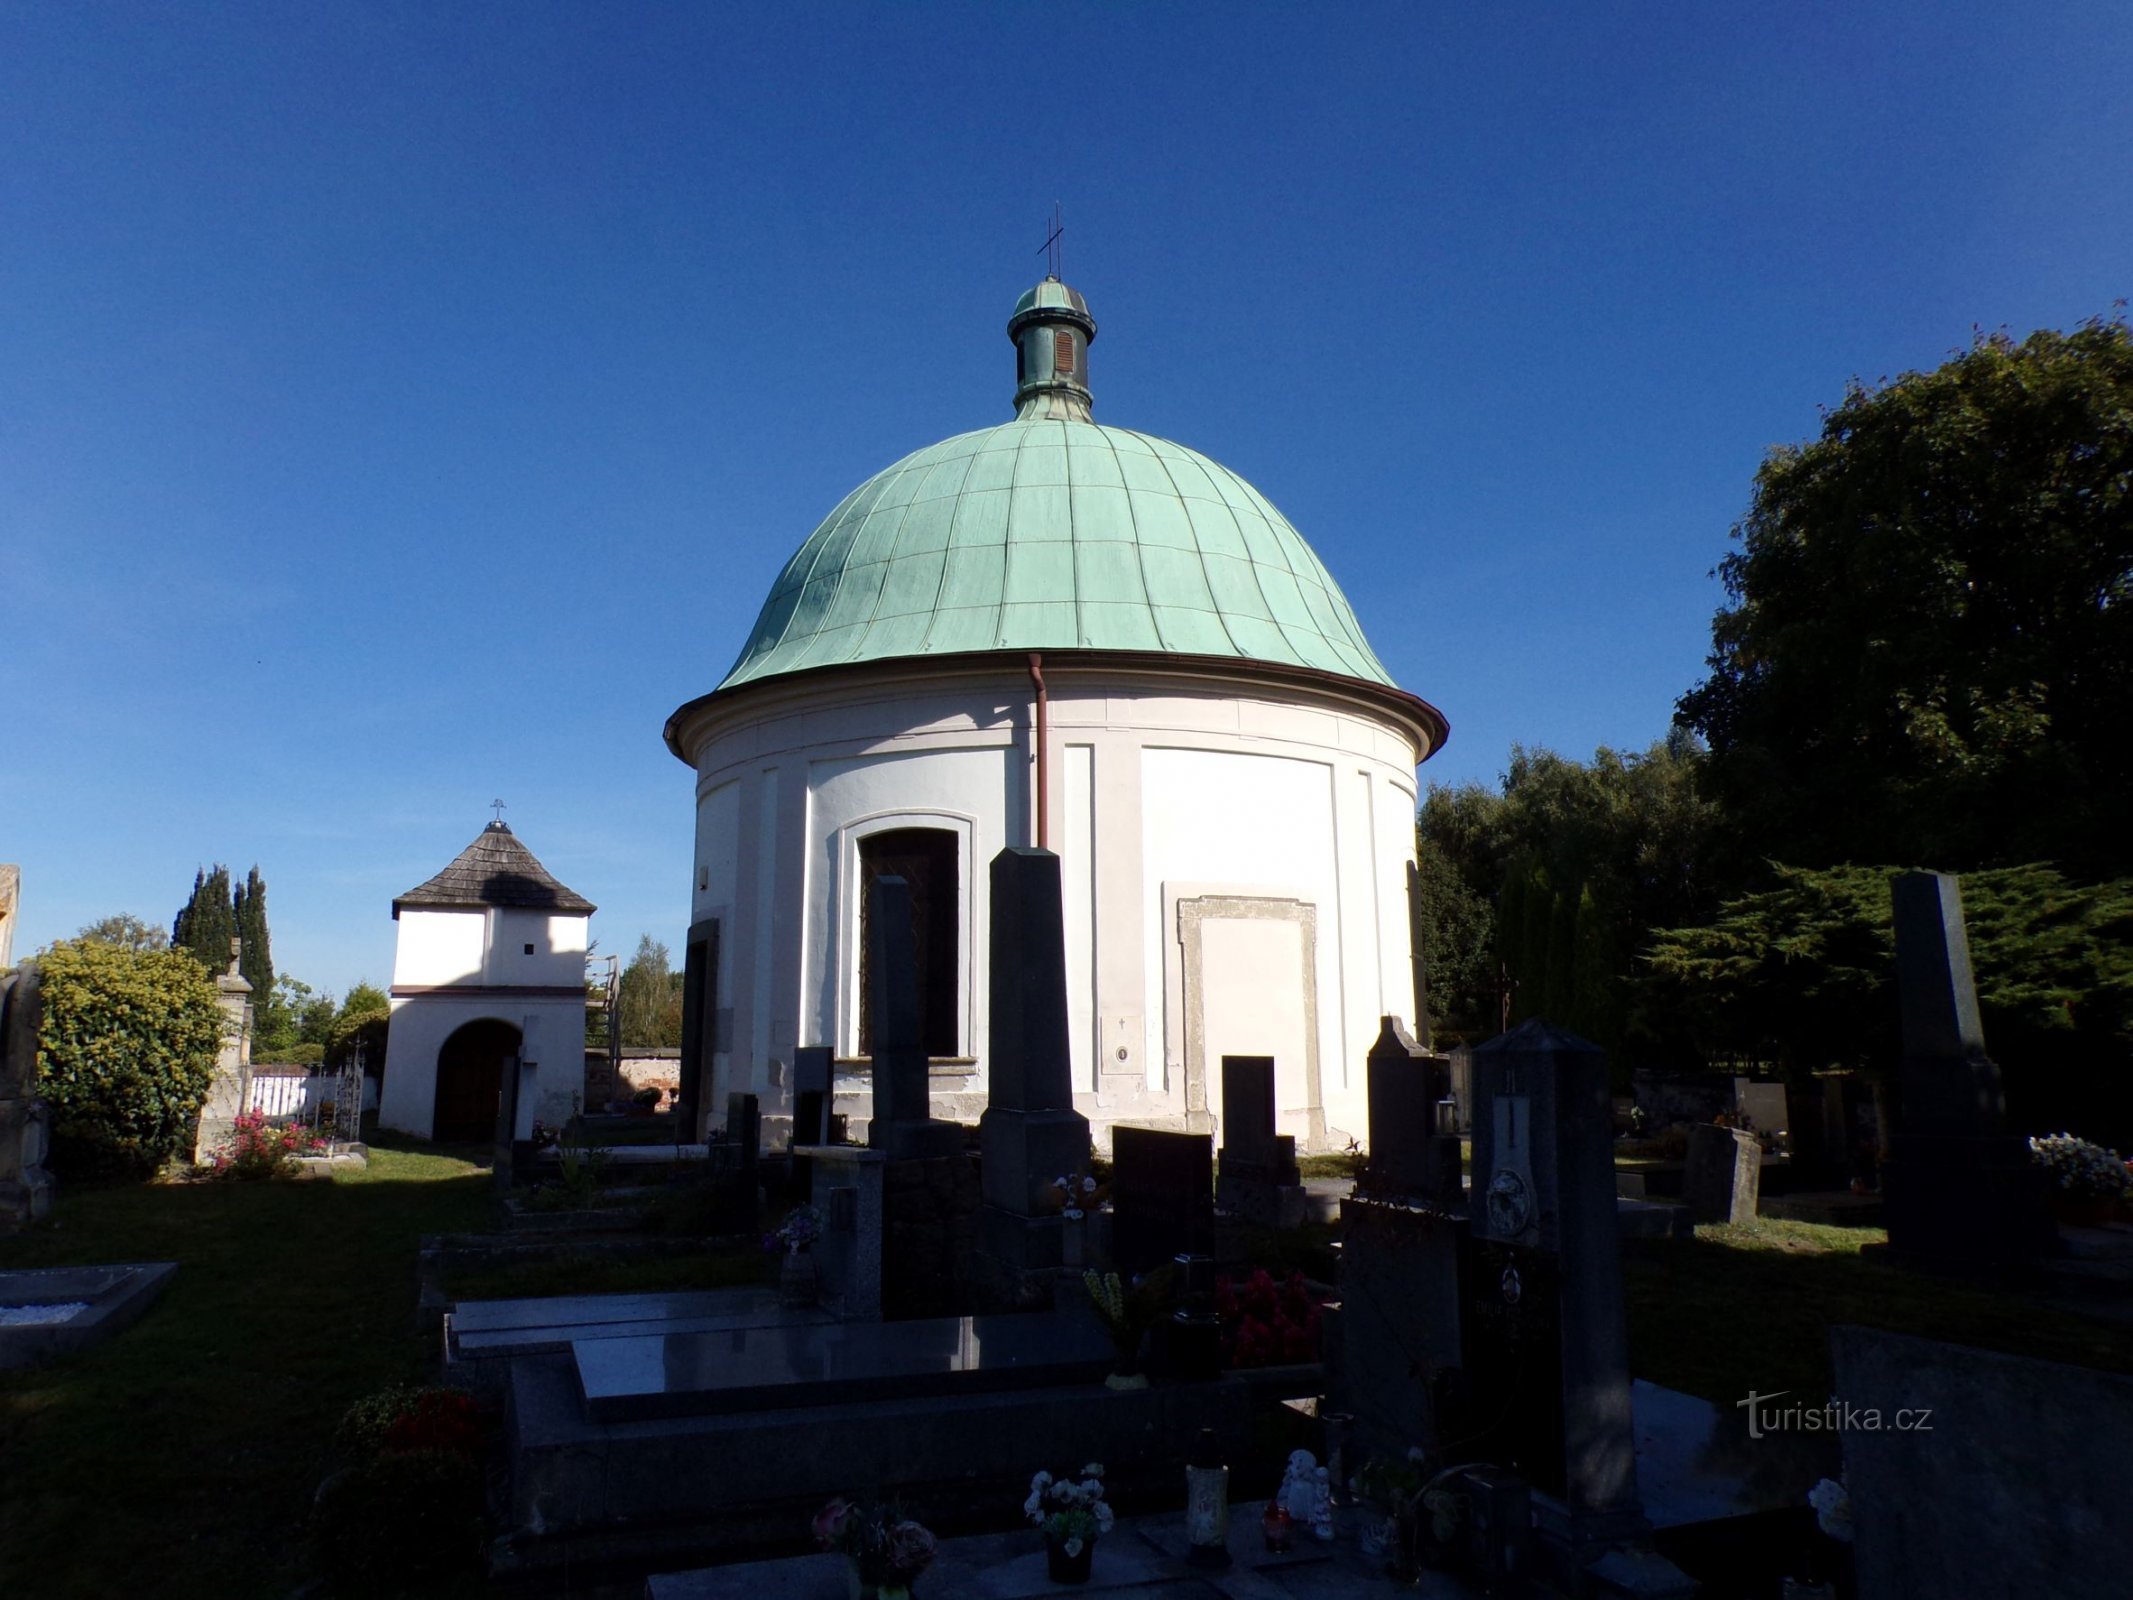 Nhà nguyện nghĩa trang của St. Jiří (Lázně Bohdaneč, ngày 2.10.2021 tháng XNUMX năm XNUMX)